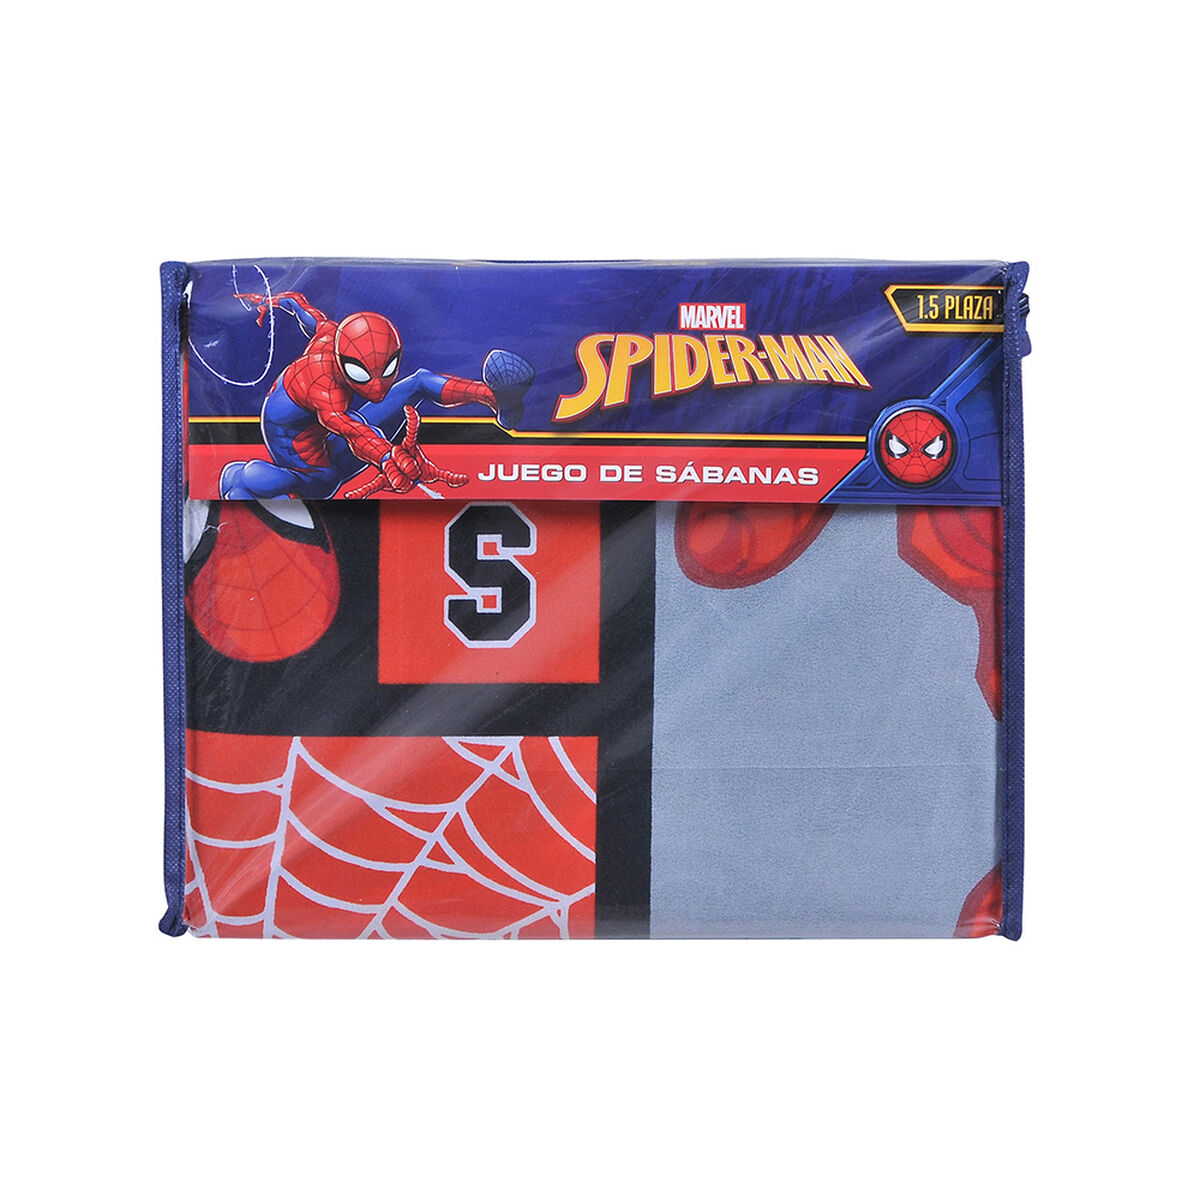 Juego de Sábanas Marvel Spiderman 1,5 Plazas